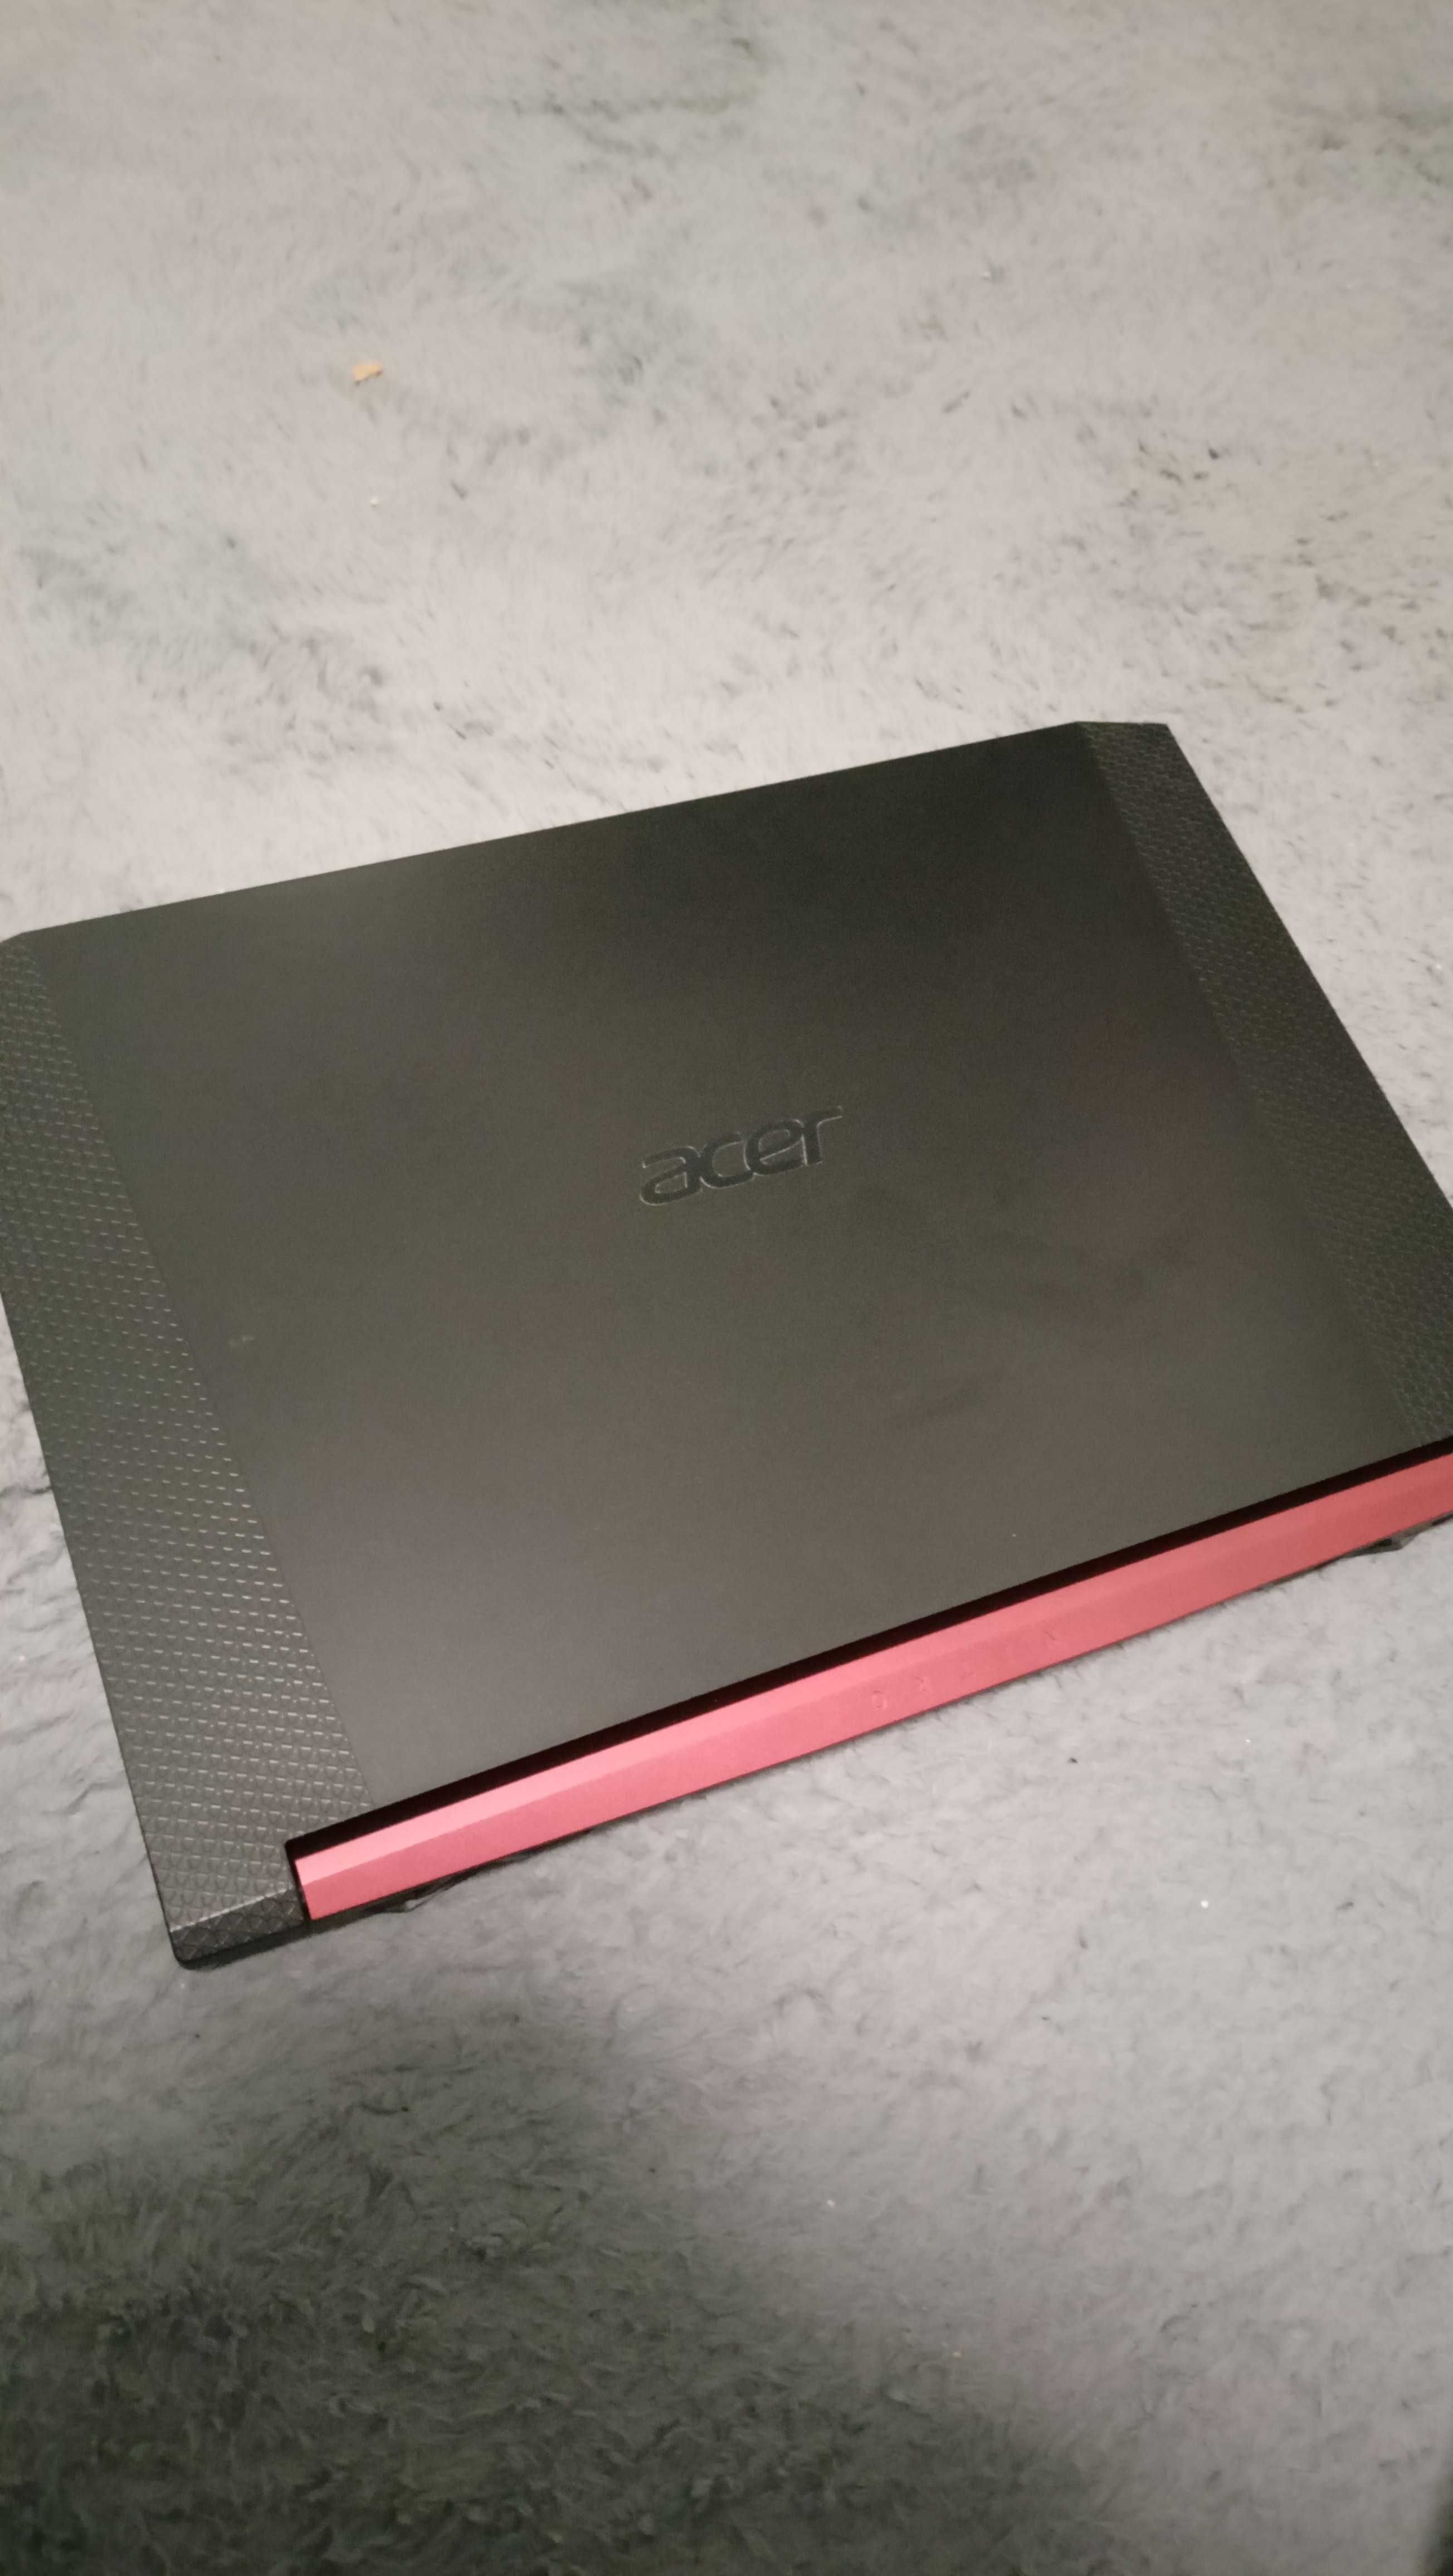 Laptop Acer Nitro 5 GTX 1660Ti i5-9300h